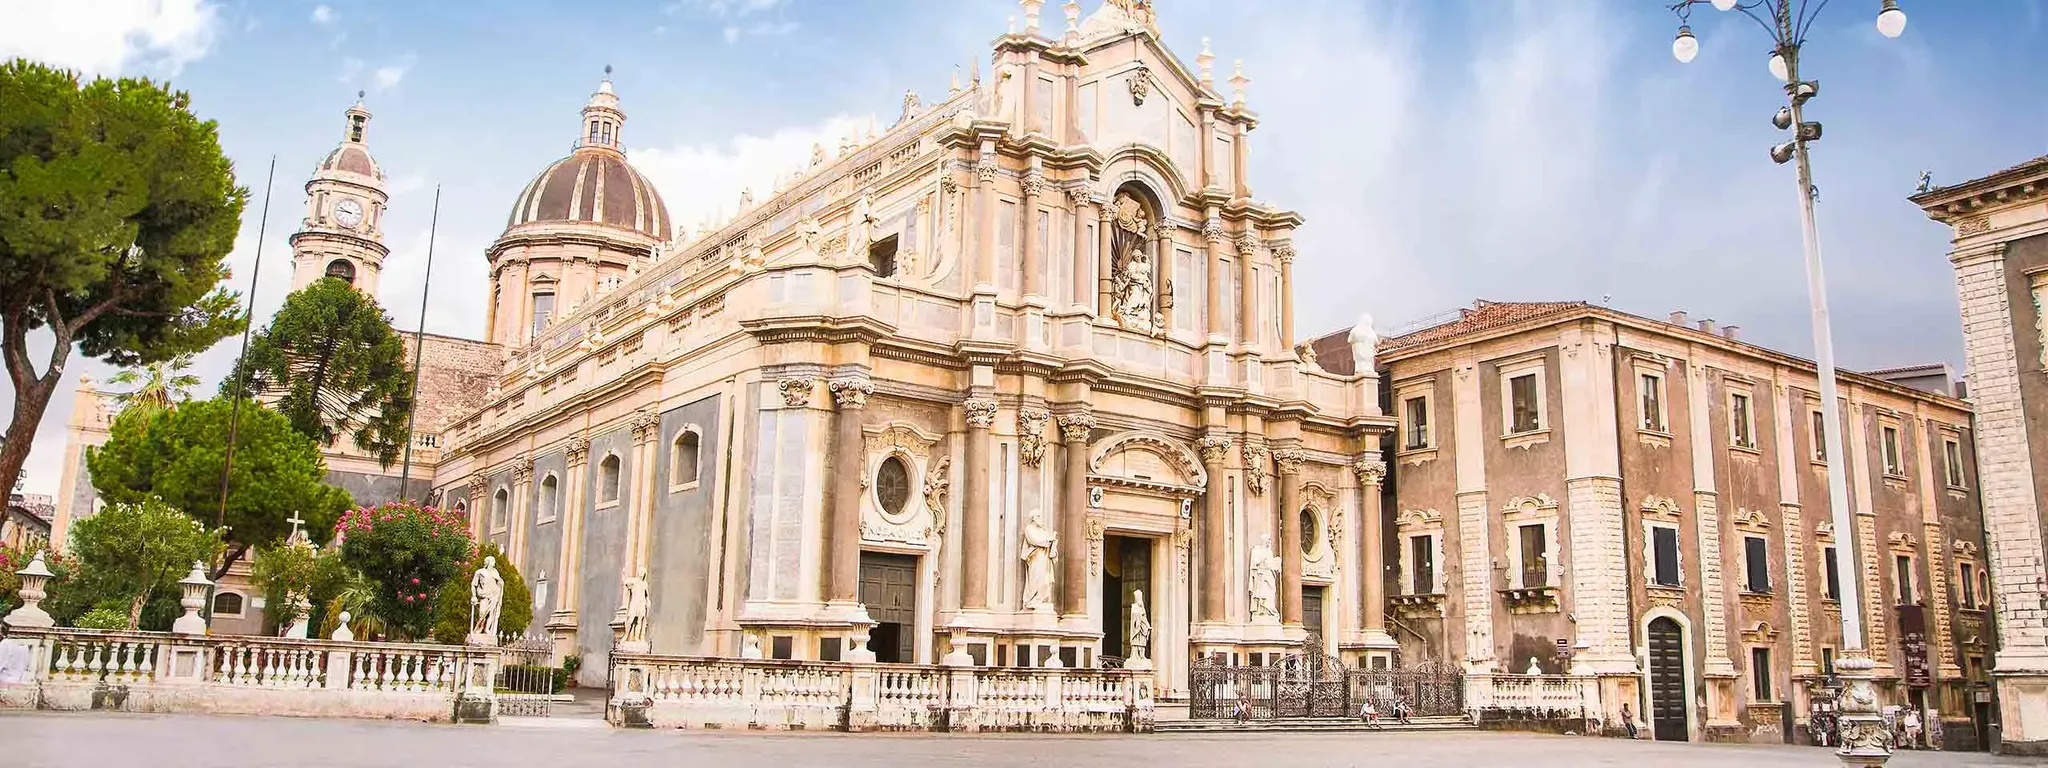 Catania | Sicily Region, Italy - Rated 5.8